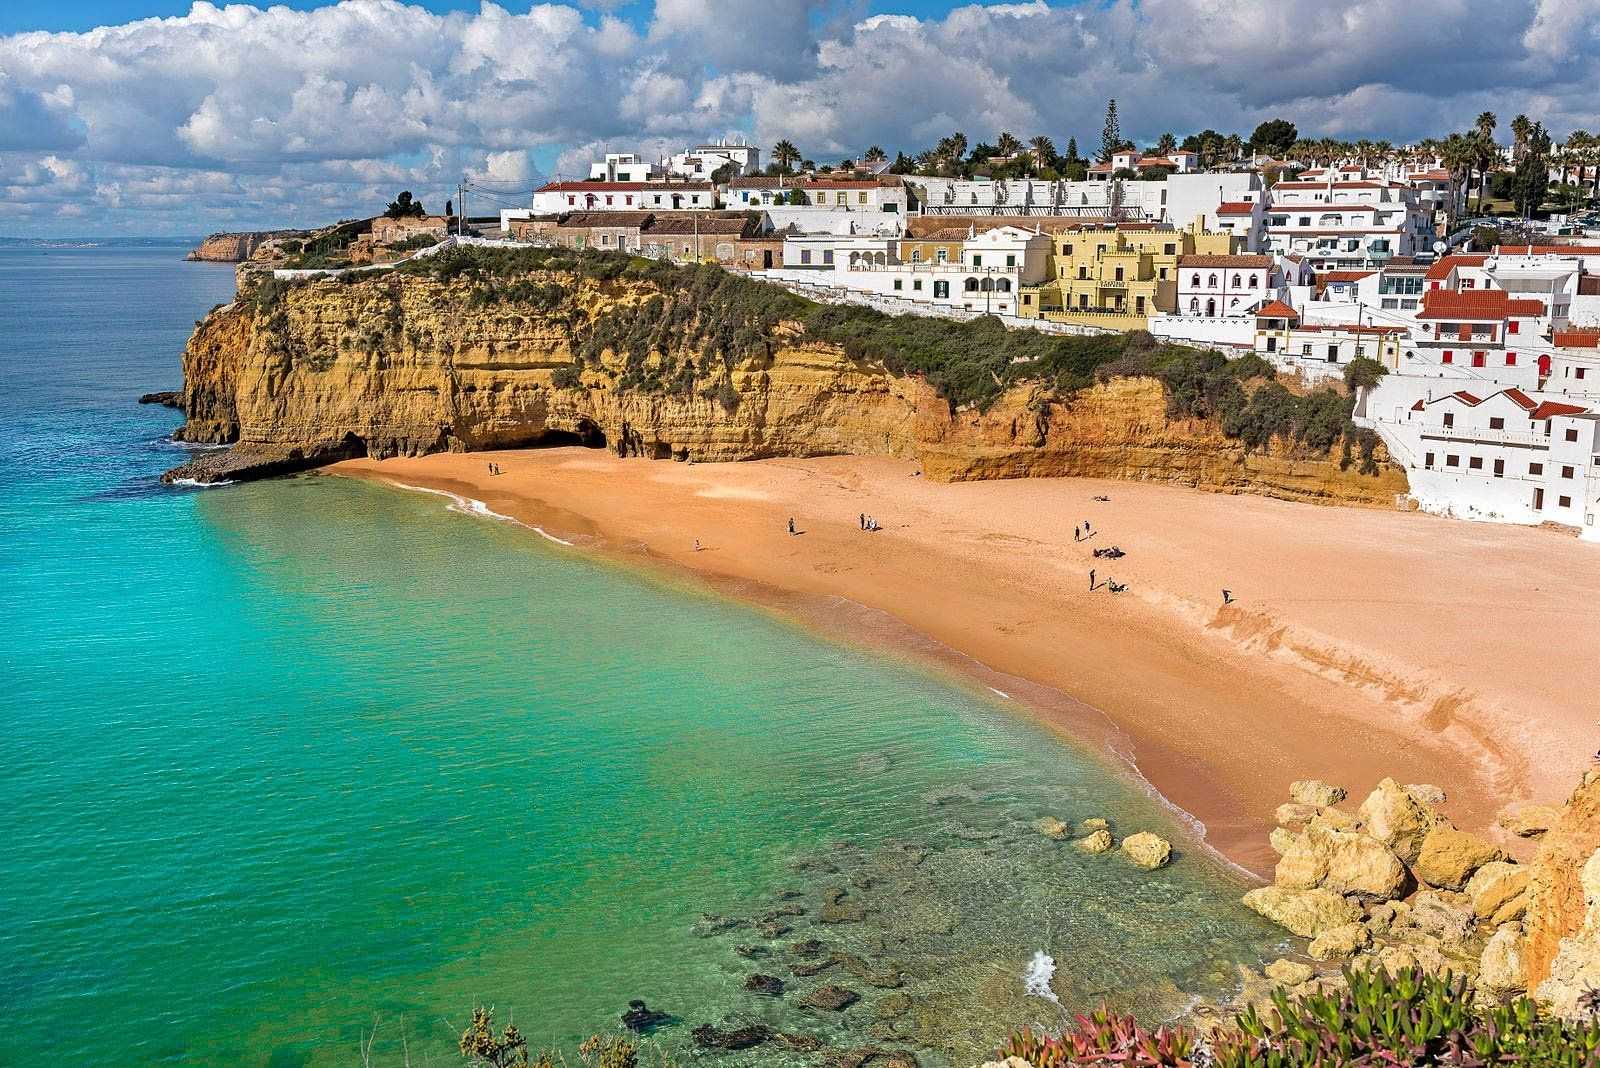 Португалия летом, осенью, зимой, весной - сезоны и погода в португалии по месяцам, климат, tемпература